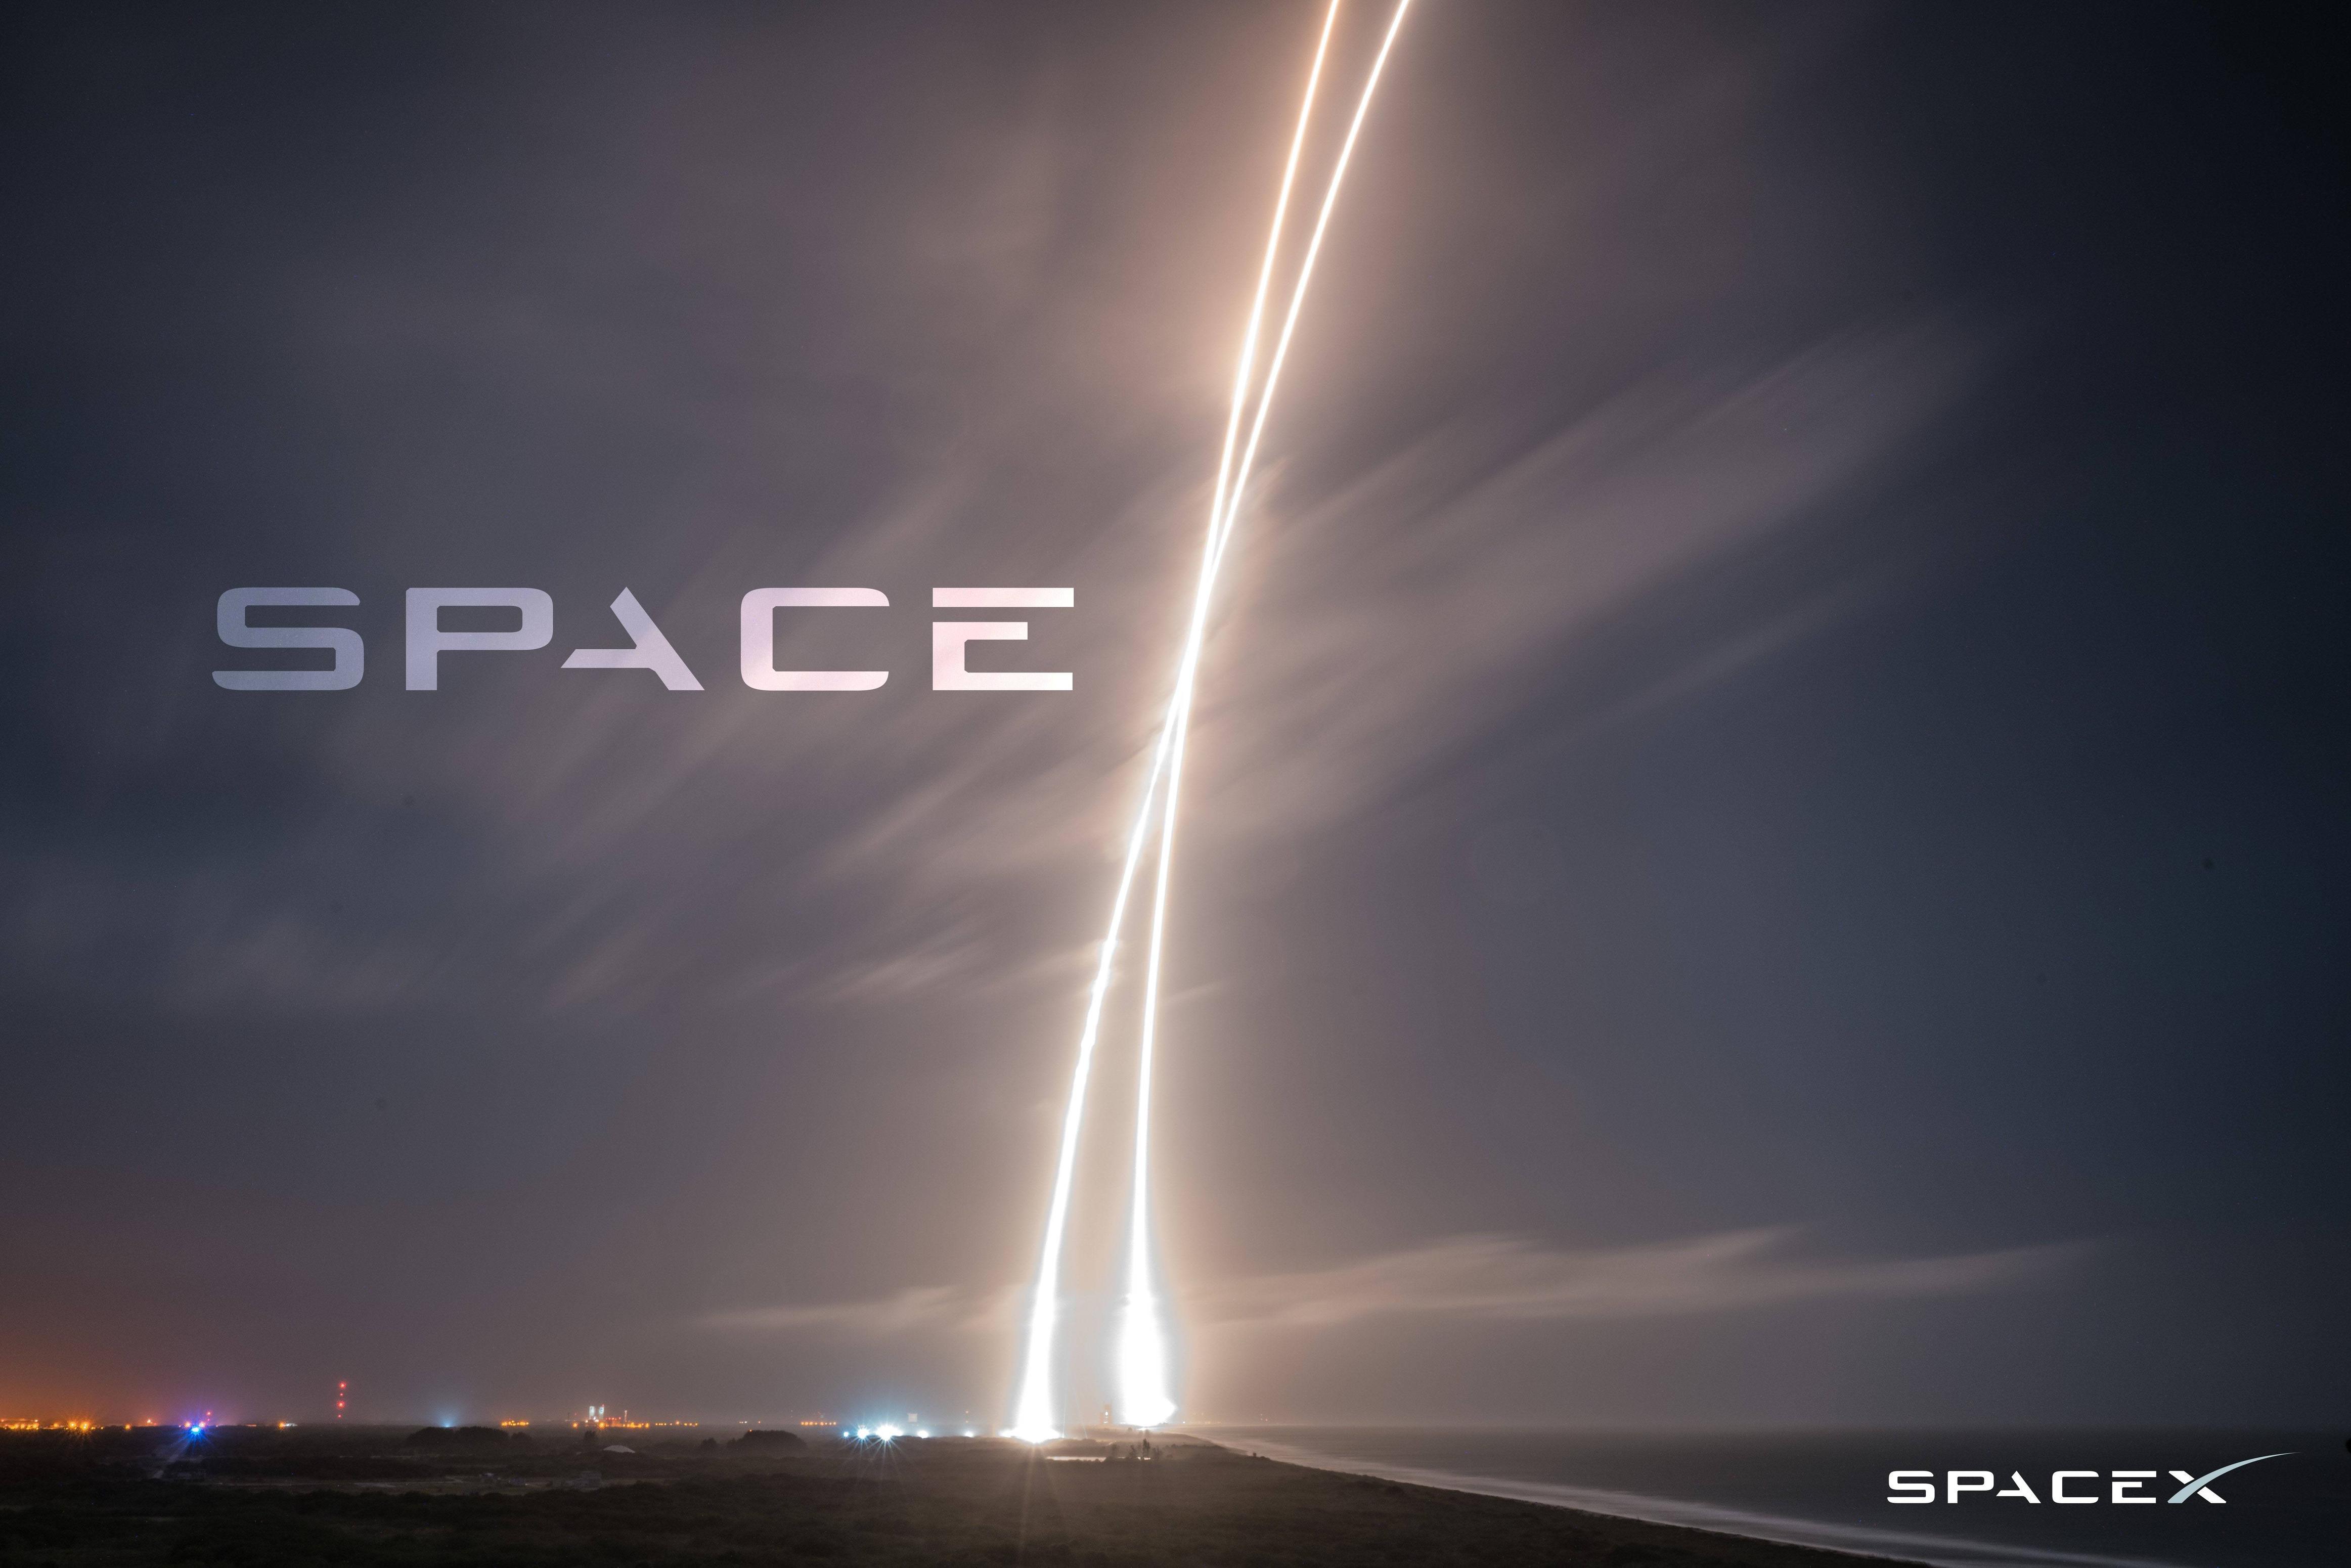 Spacex Hd Desktop Wallpaper